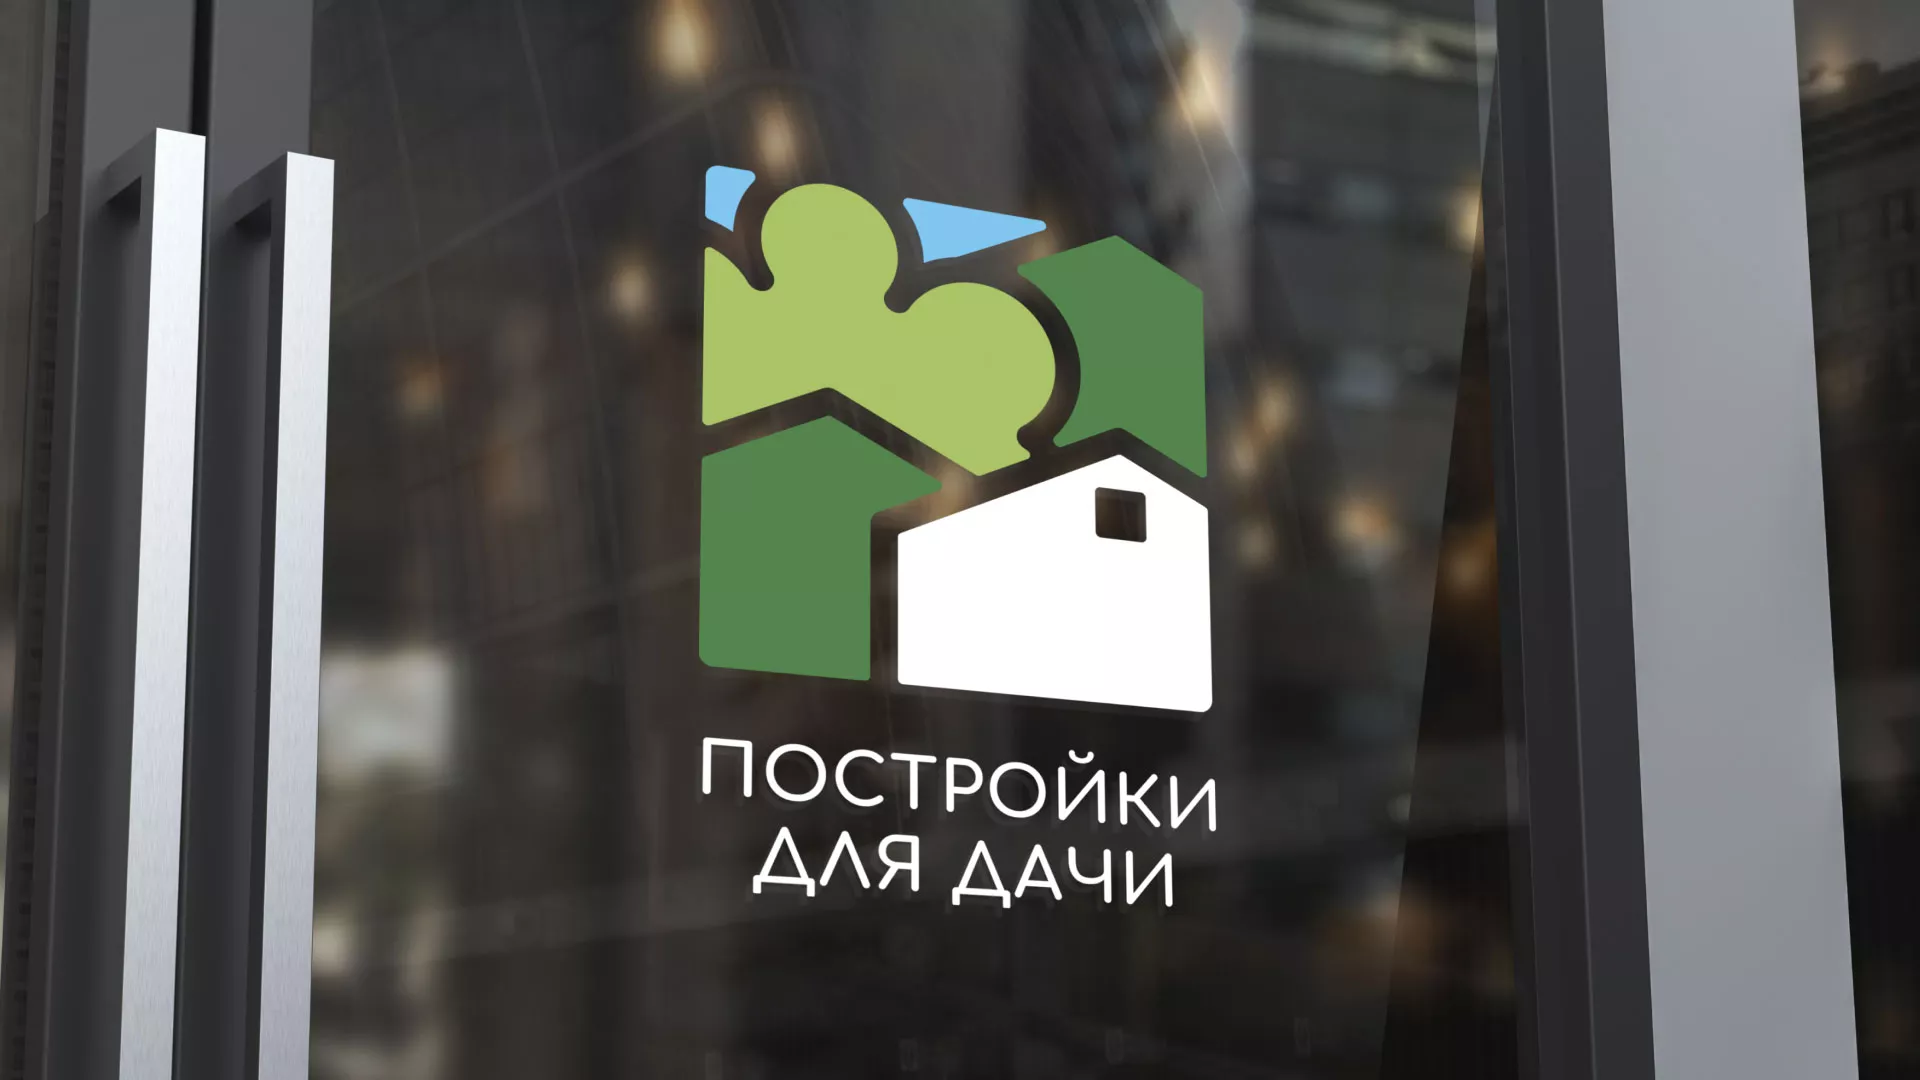 Разработка логотипа в Абдулино для компании «Постройки для дачи»